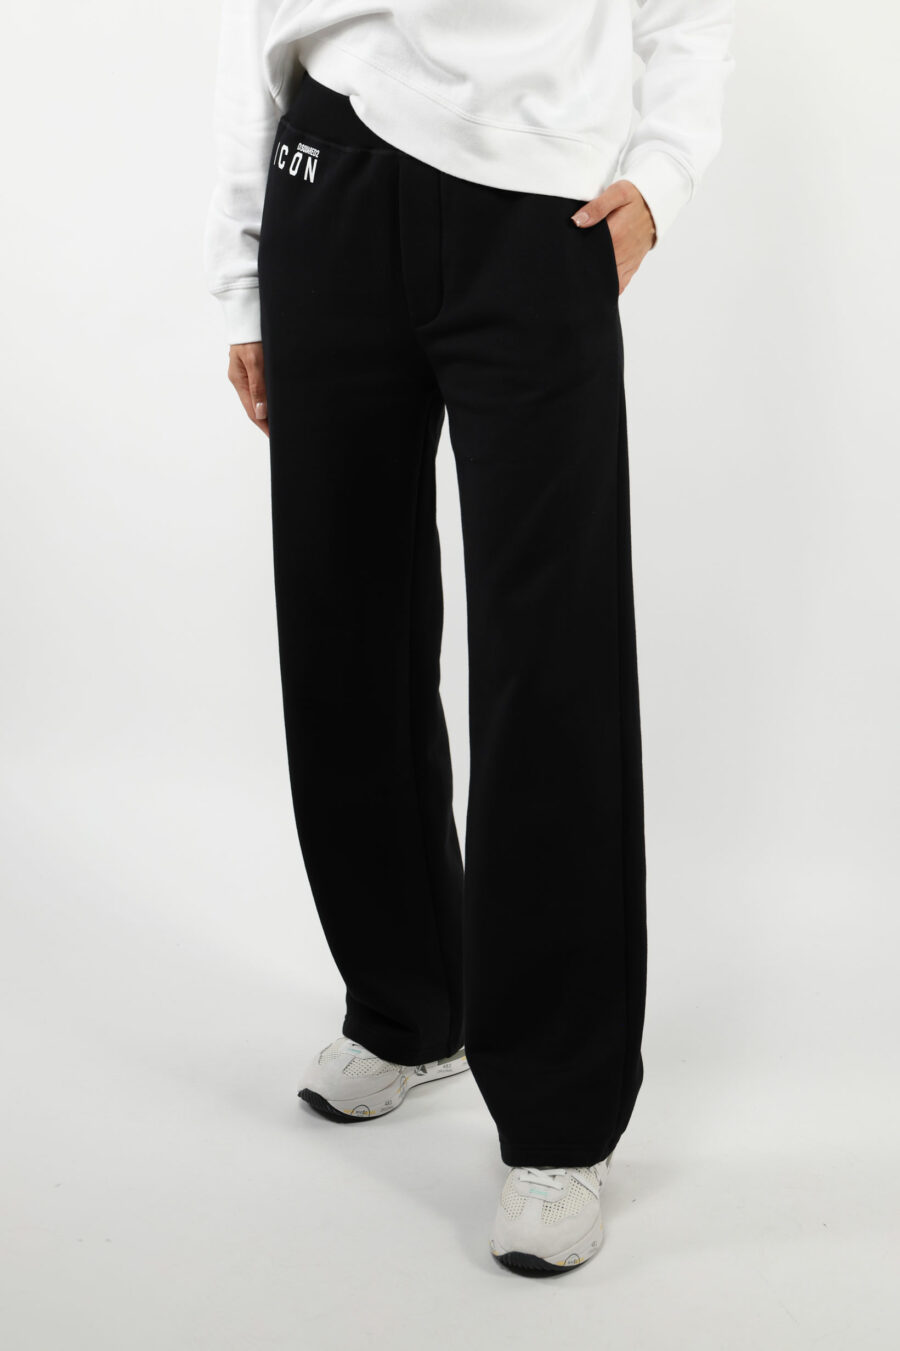 Pantalón de chándal negro con minilogo "icon" y bota ancha - 109771